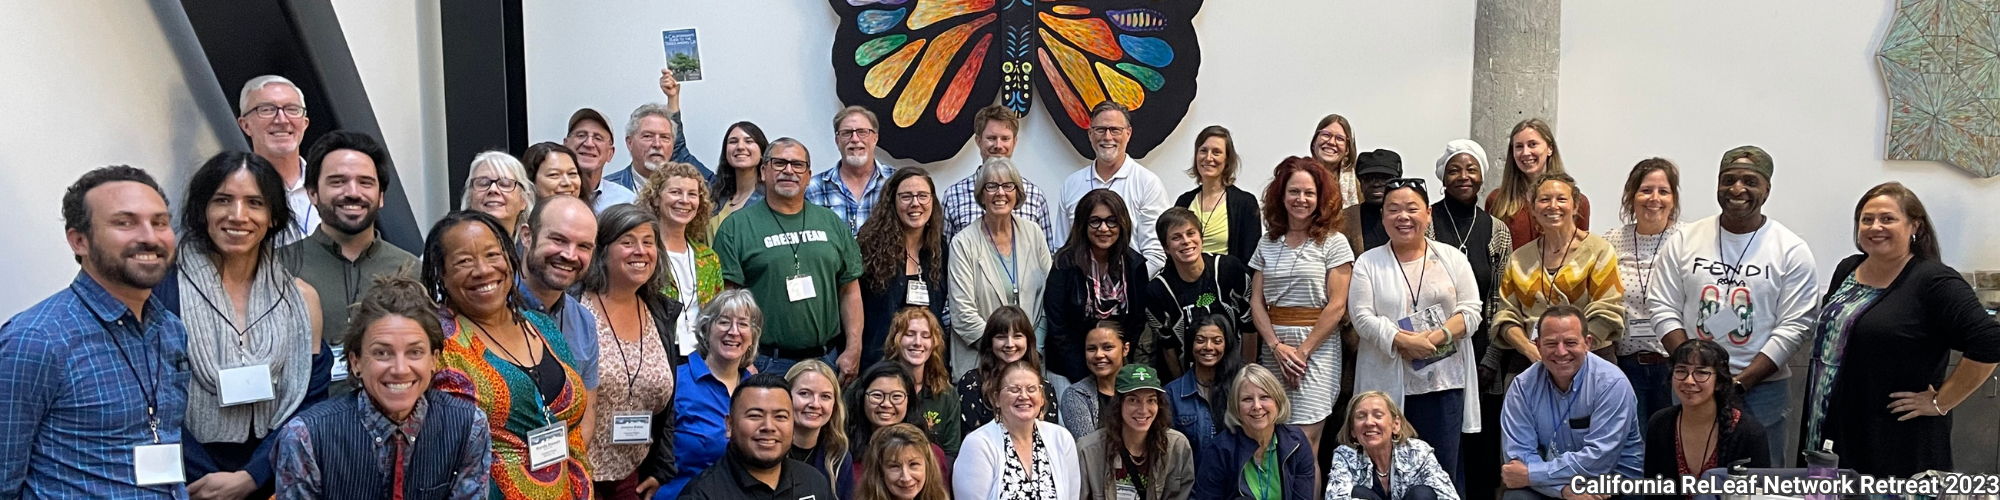 صورة جماعية للمشاركين في California ReLeaf Network Retreat في سكرامنتو عام 2023